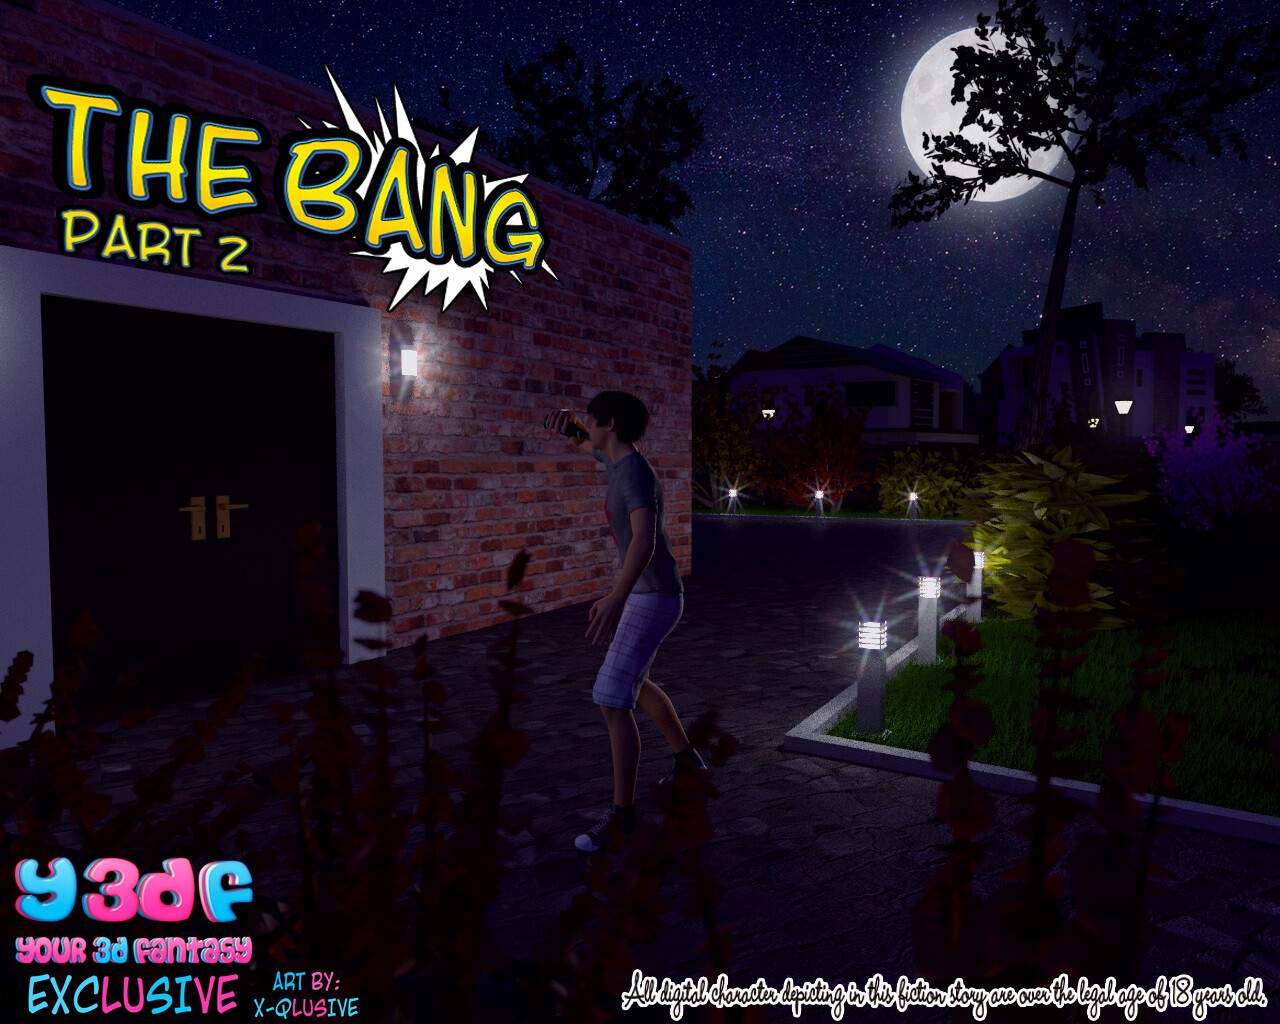 The Bang 2 Main Image